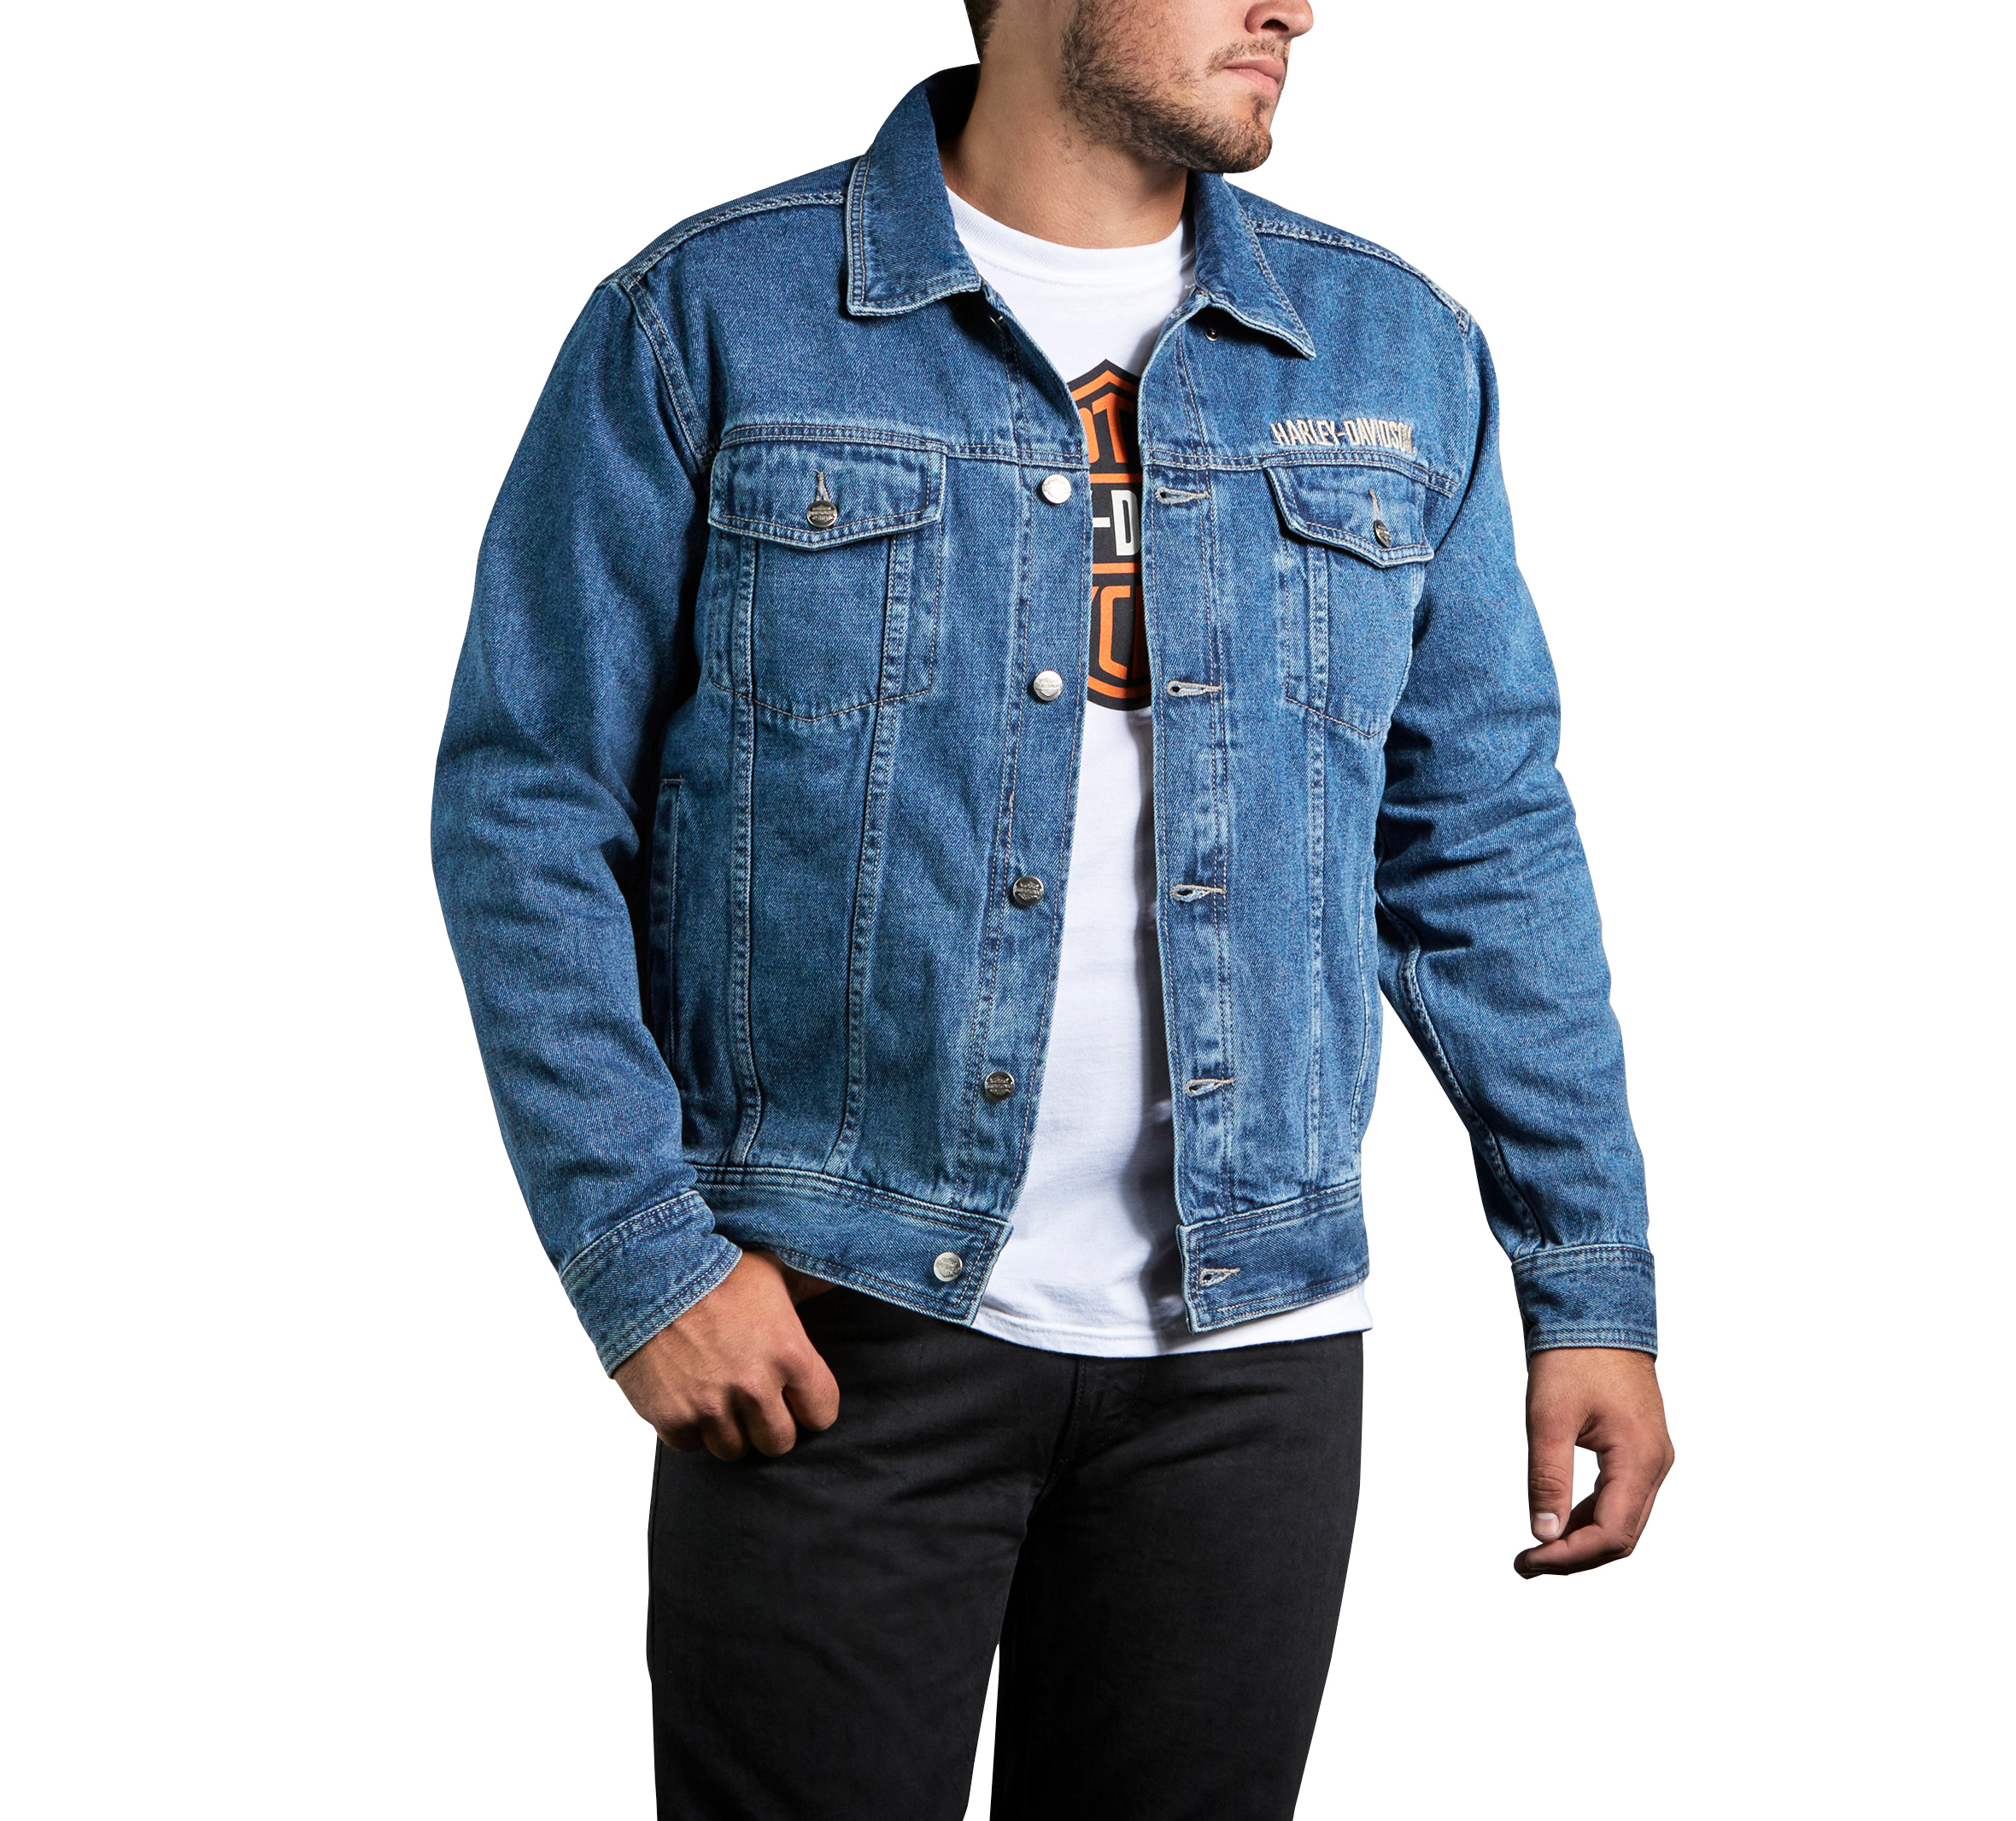 Coats Jackets Vests Harley Davidson Men S Black Overdyed Denim Button Up Jacket Retail 170 S02 Blisstubs